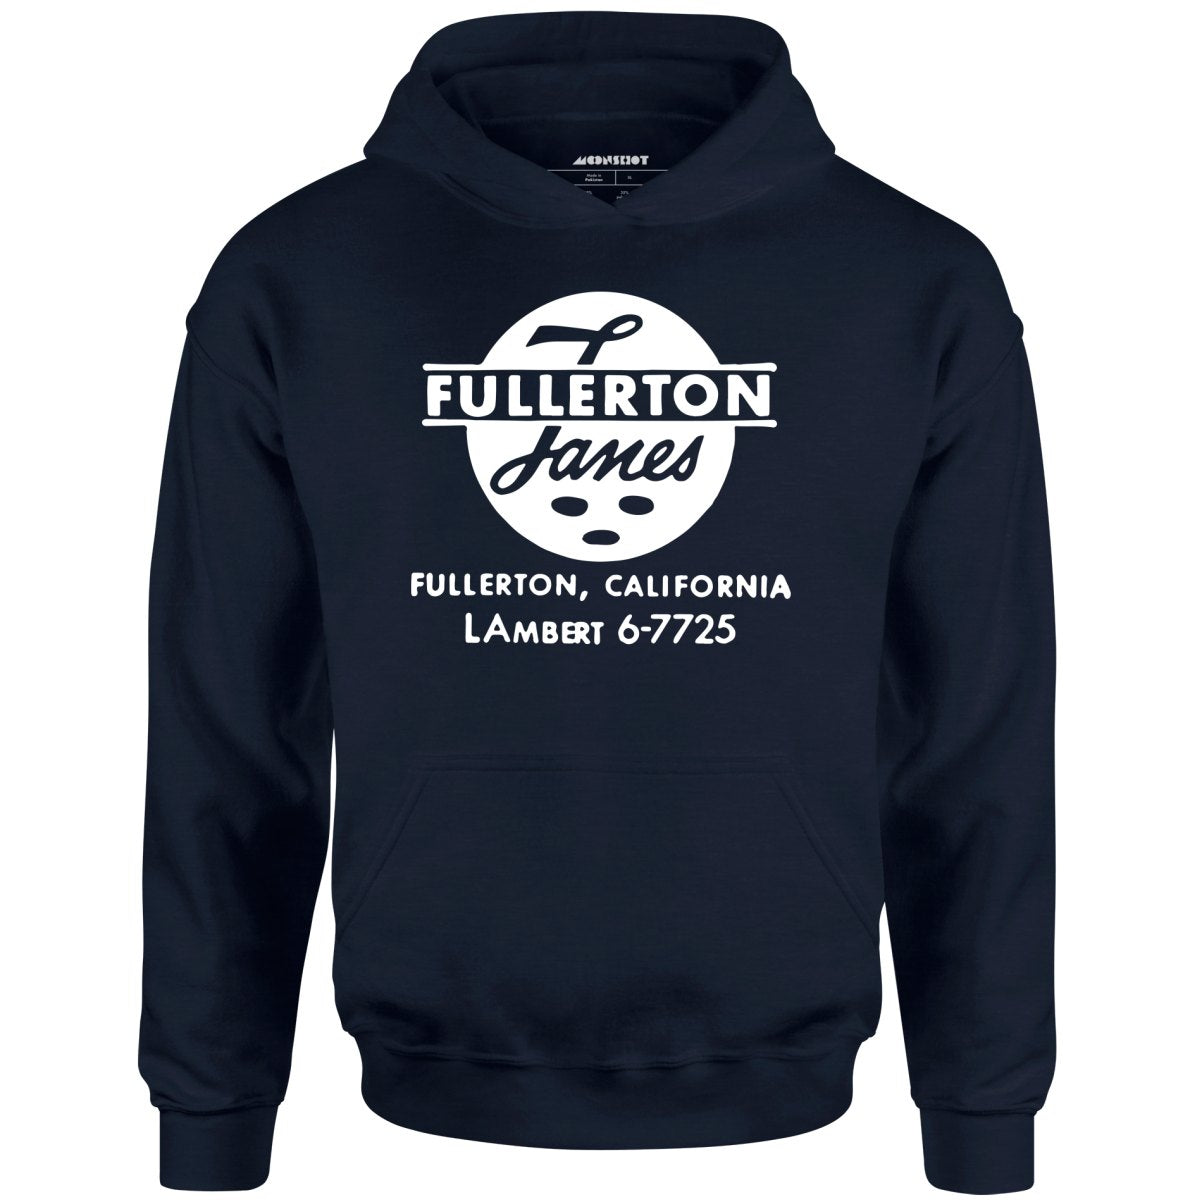 Fullerton Lanes - Fullerton, CA - Vintage Bowling Alley - Unisex Hoodie